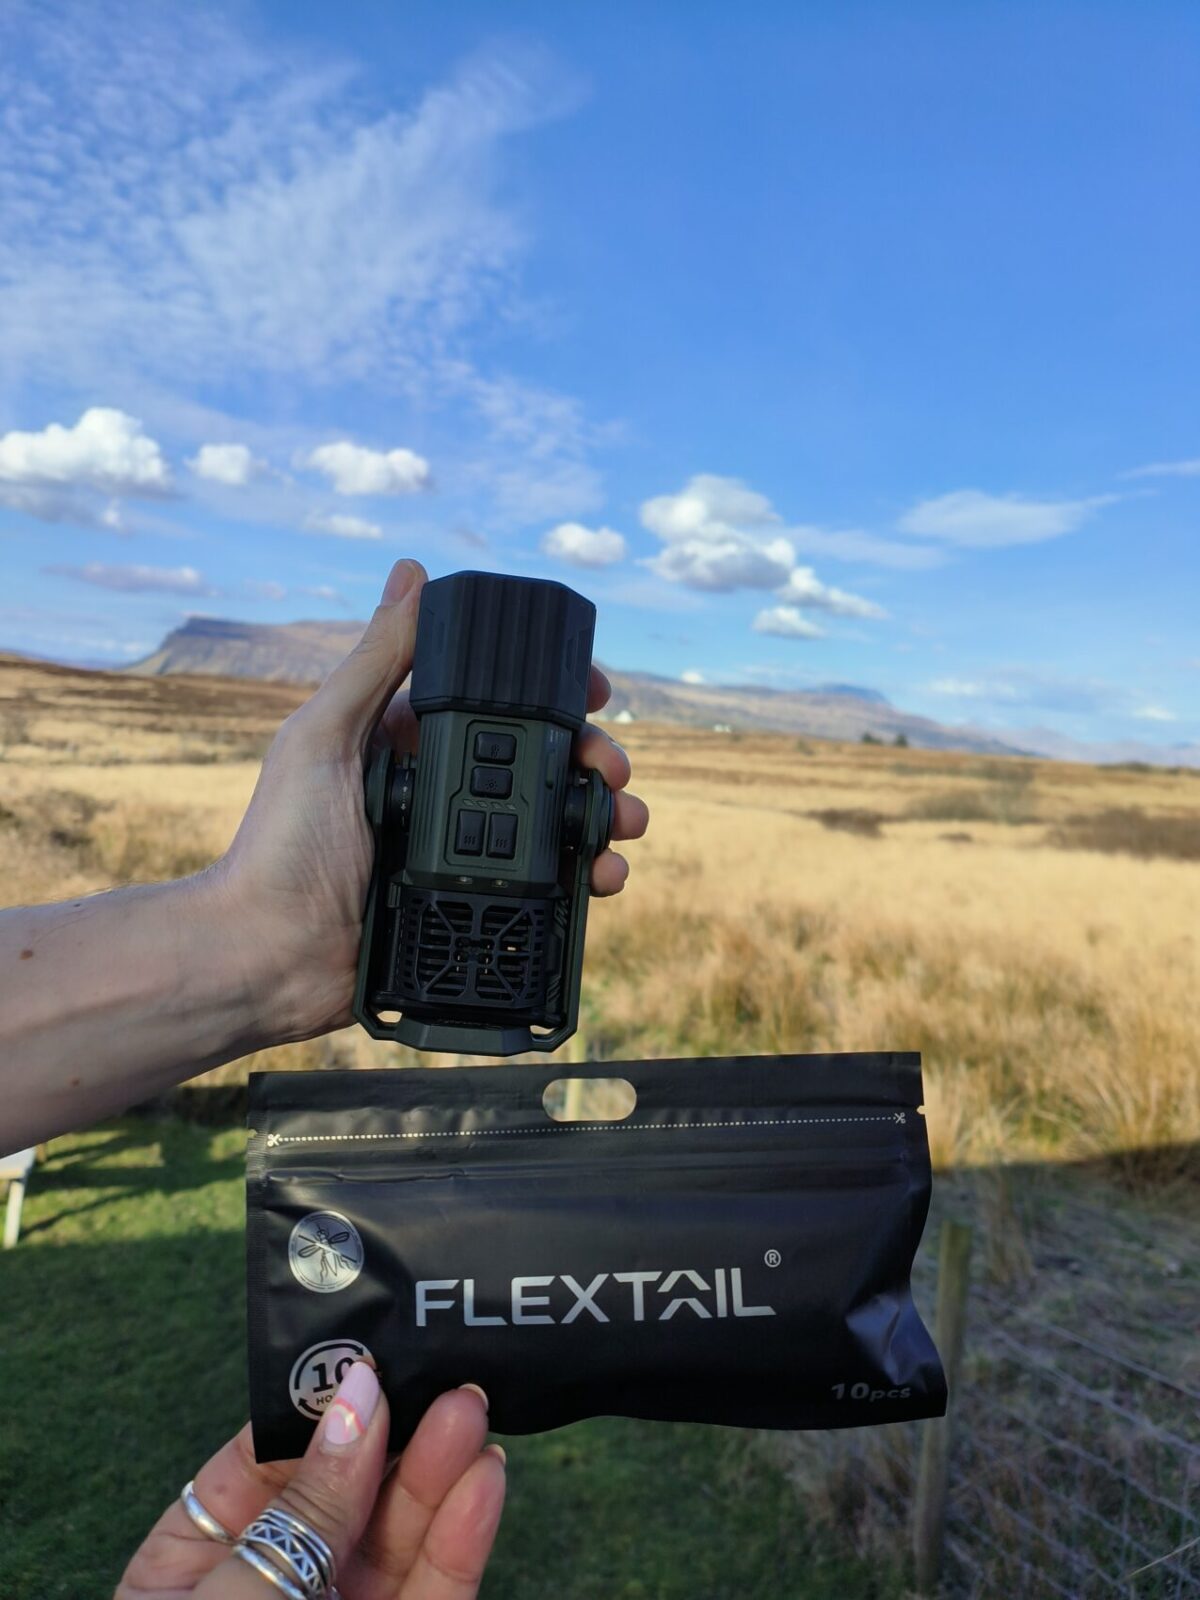 Flextail Evo Repeller camping gadget